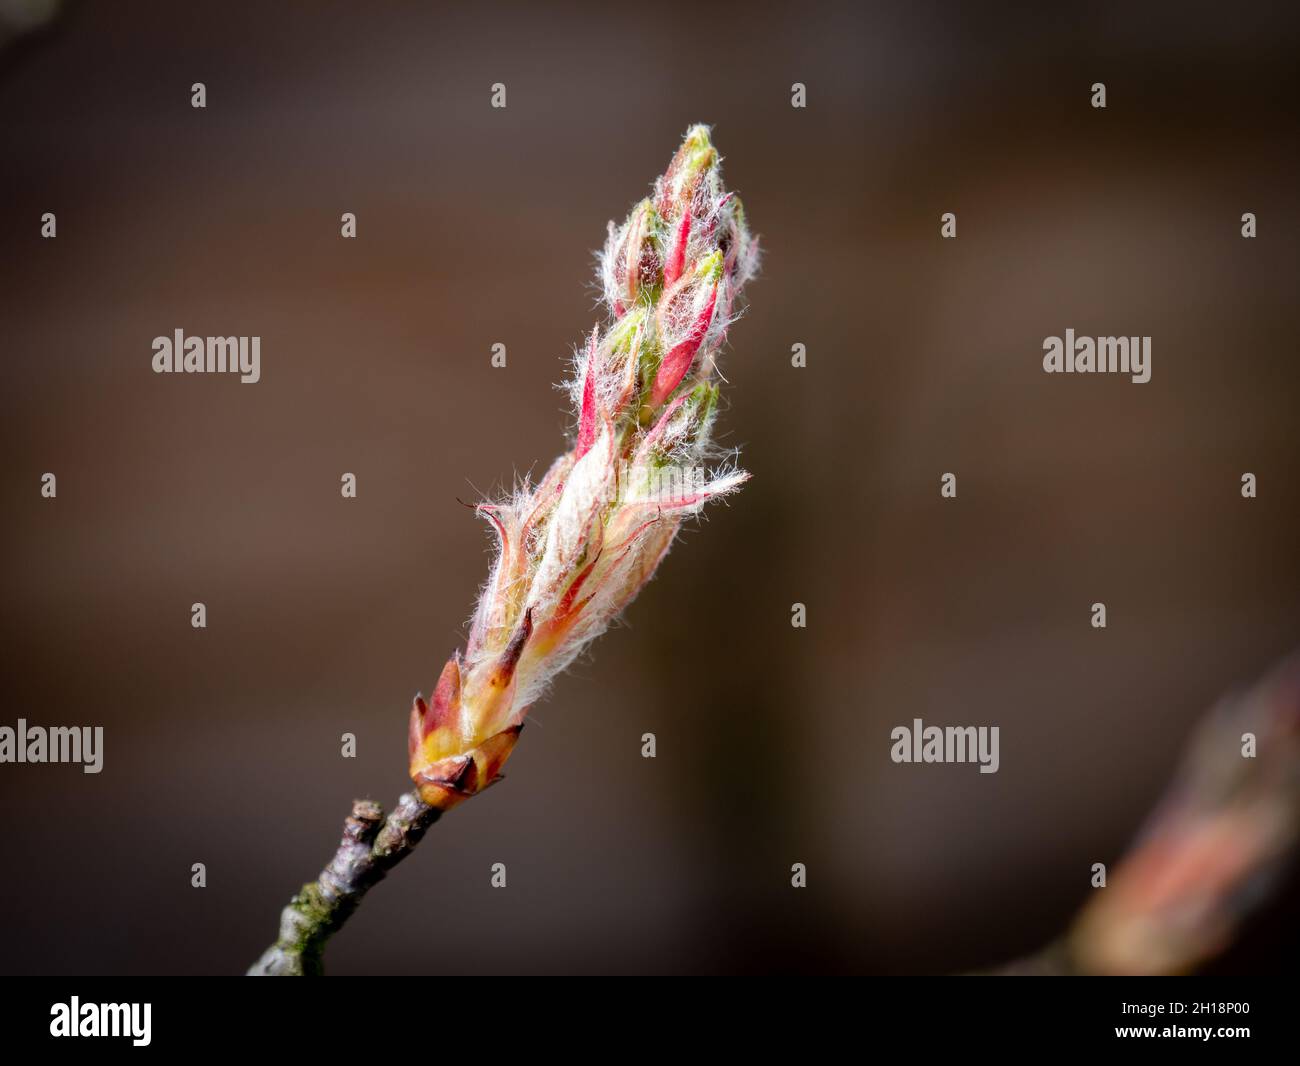 mespilus nevado de enebro, Amelanchier lamarkii, cerca de twig con nuevo brote a principios de la primavera, Países Bajos Foto de stock